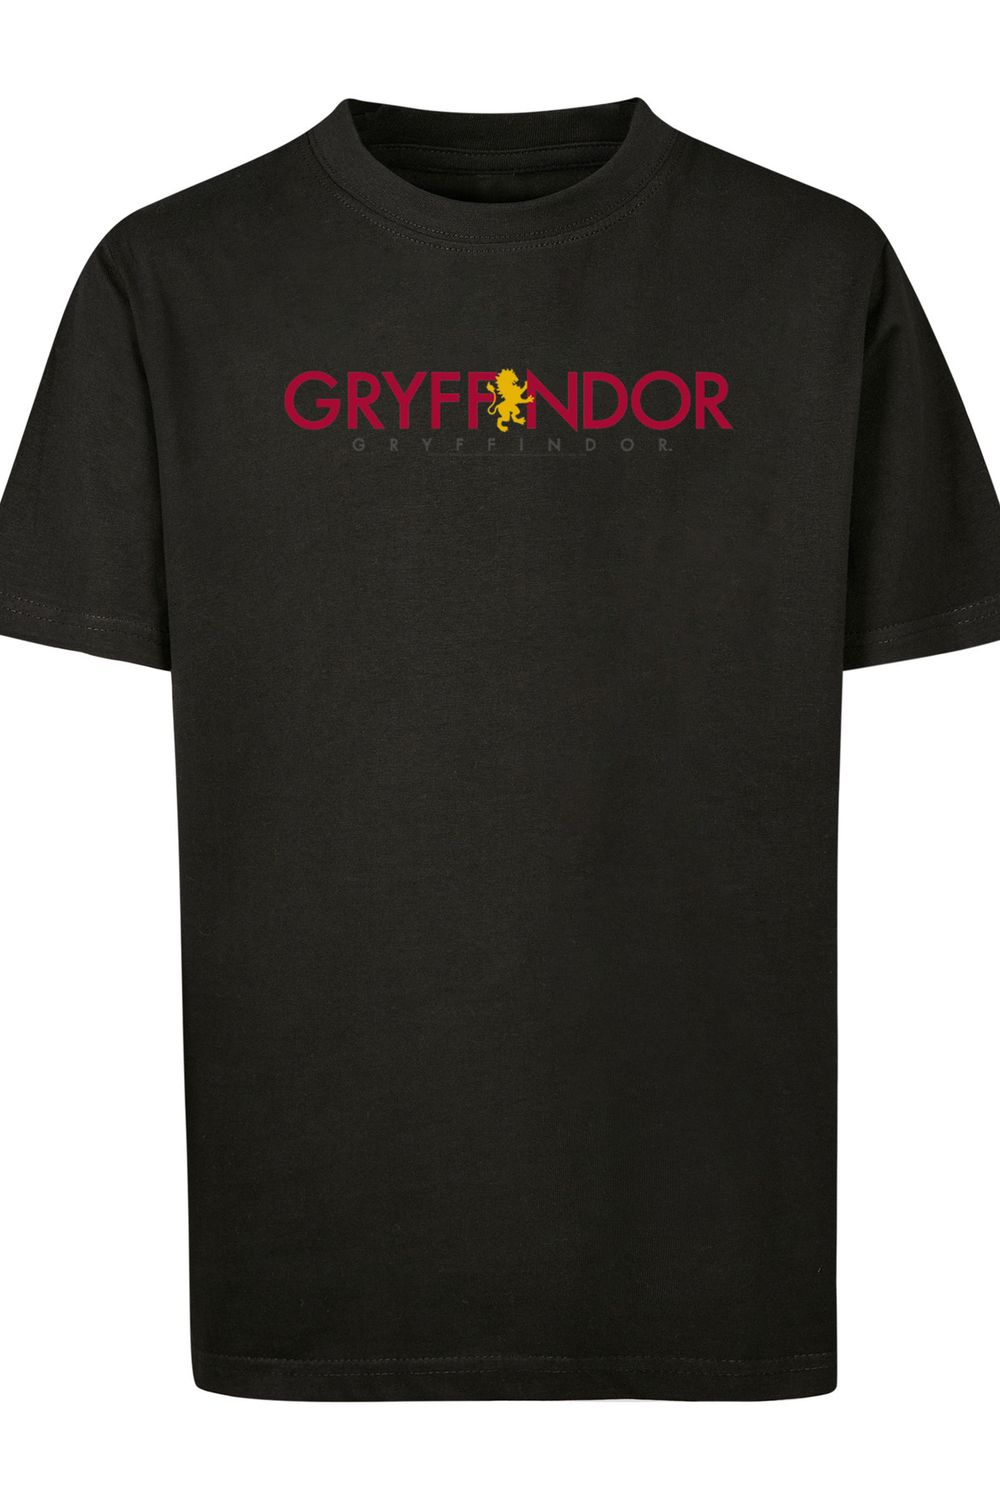 Trendyol Kinder-Basic-T-Shirt F4NT4STIC mit Kinder-Harry-Potter-Gryffindor-Text -